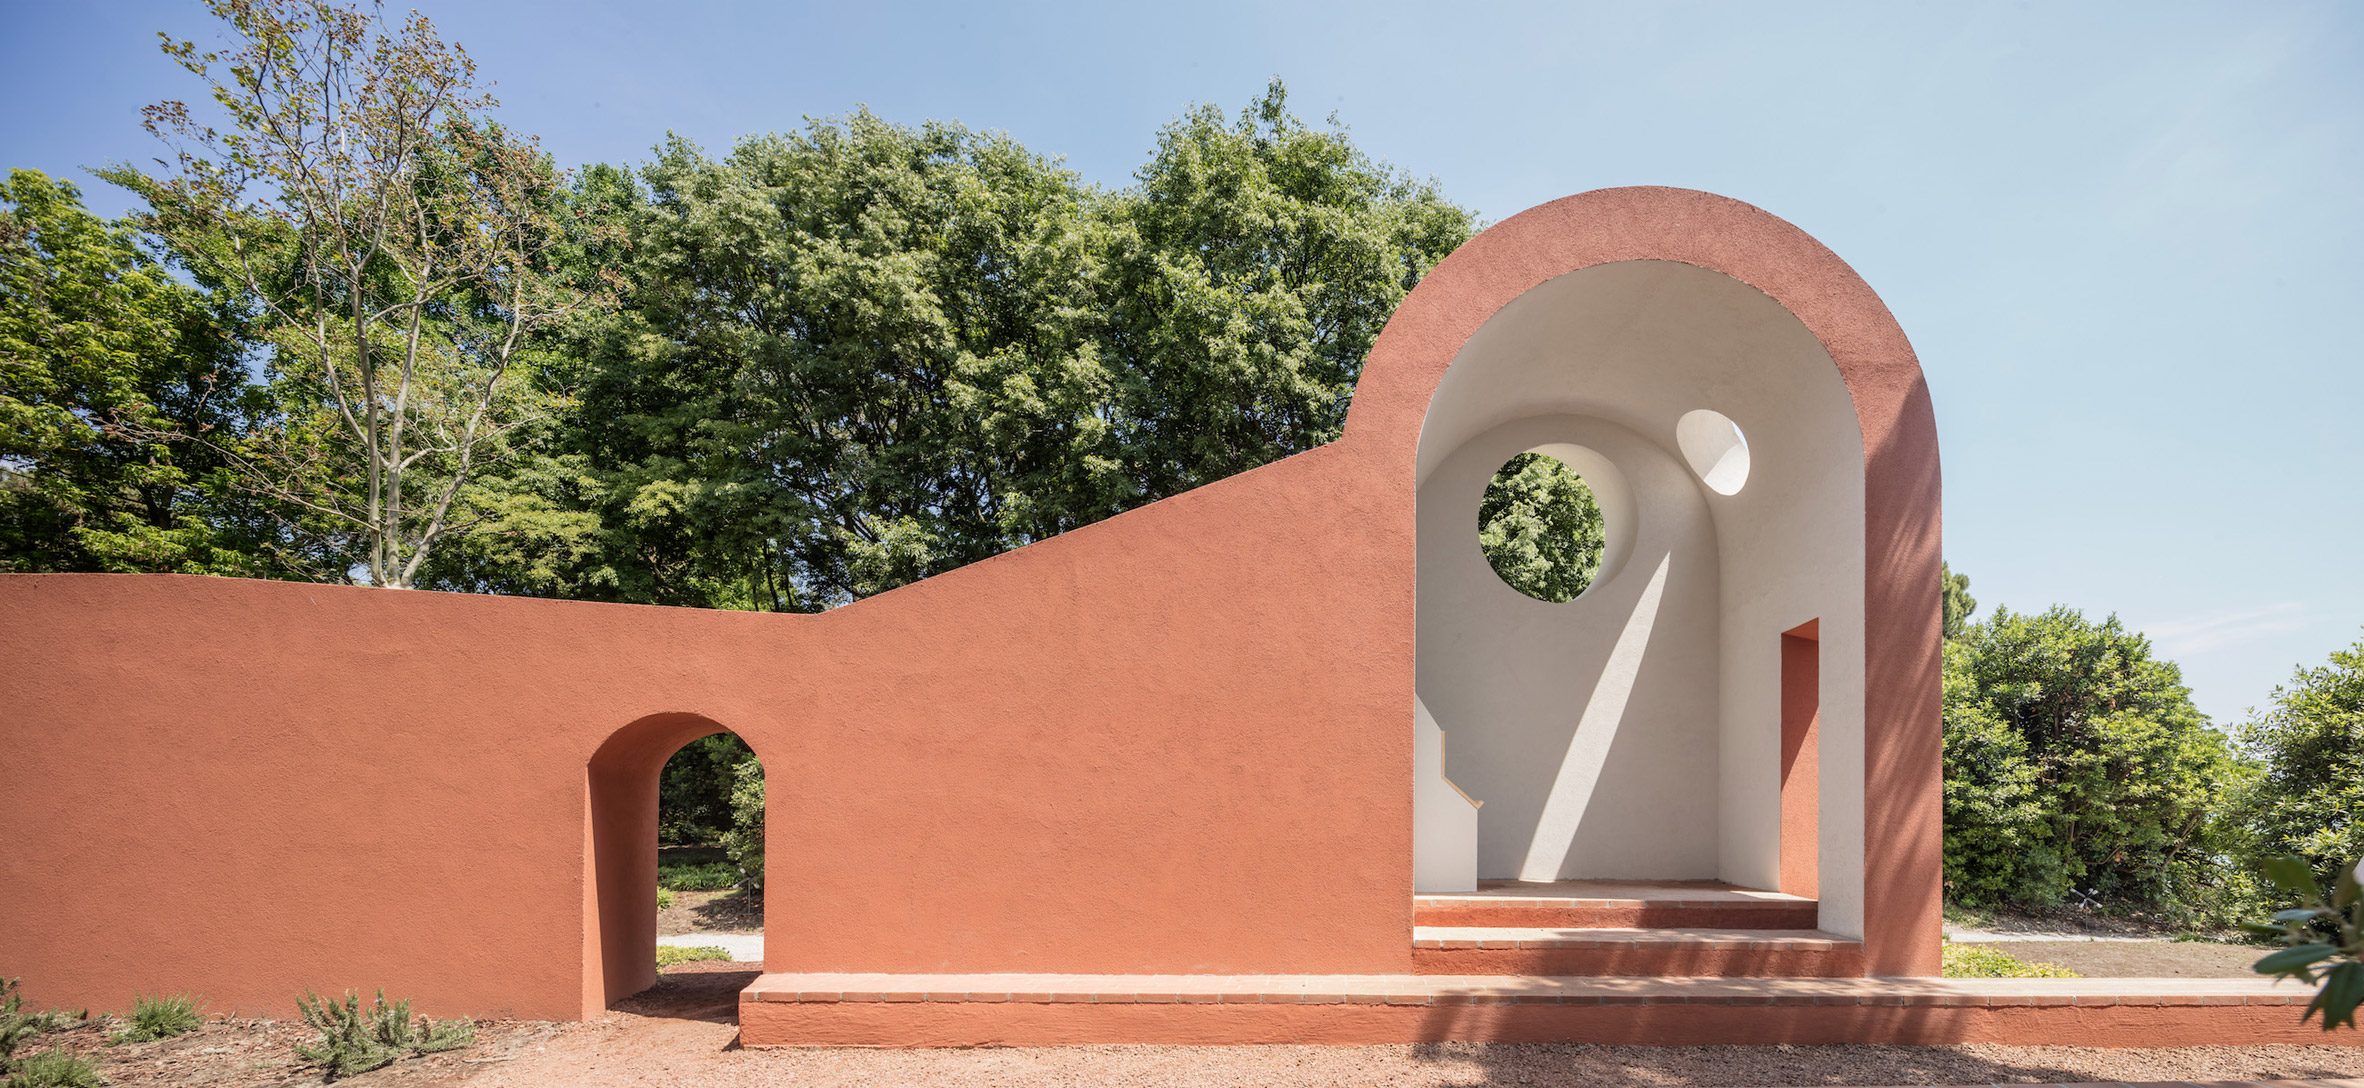 Venice Architecture Biennale Vatican chapel by Flores & Prats